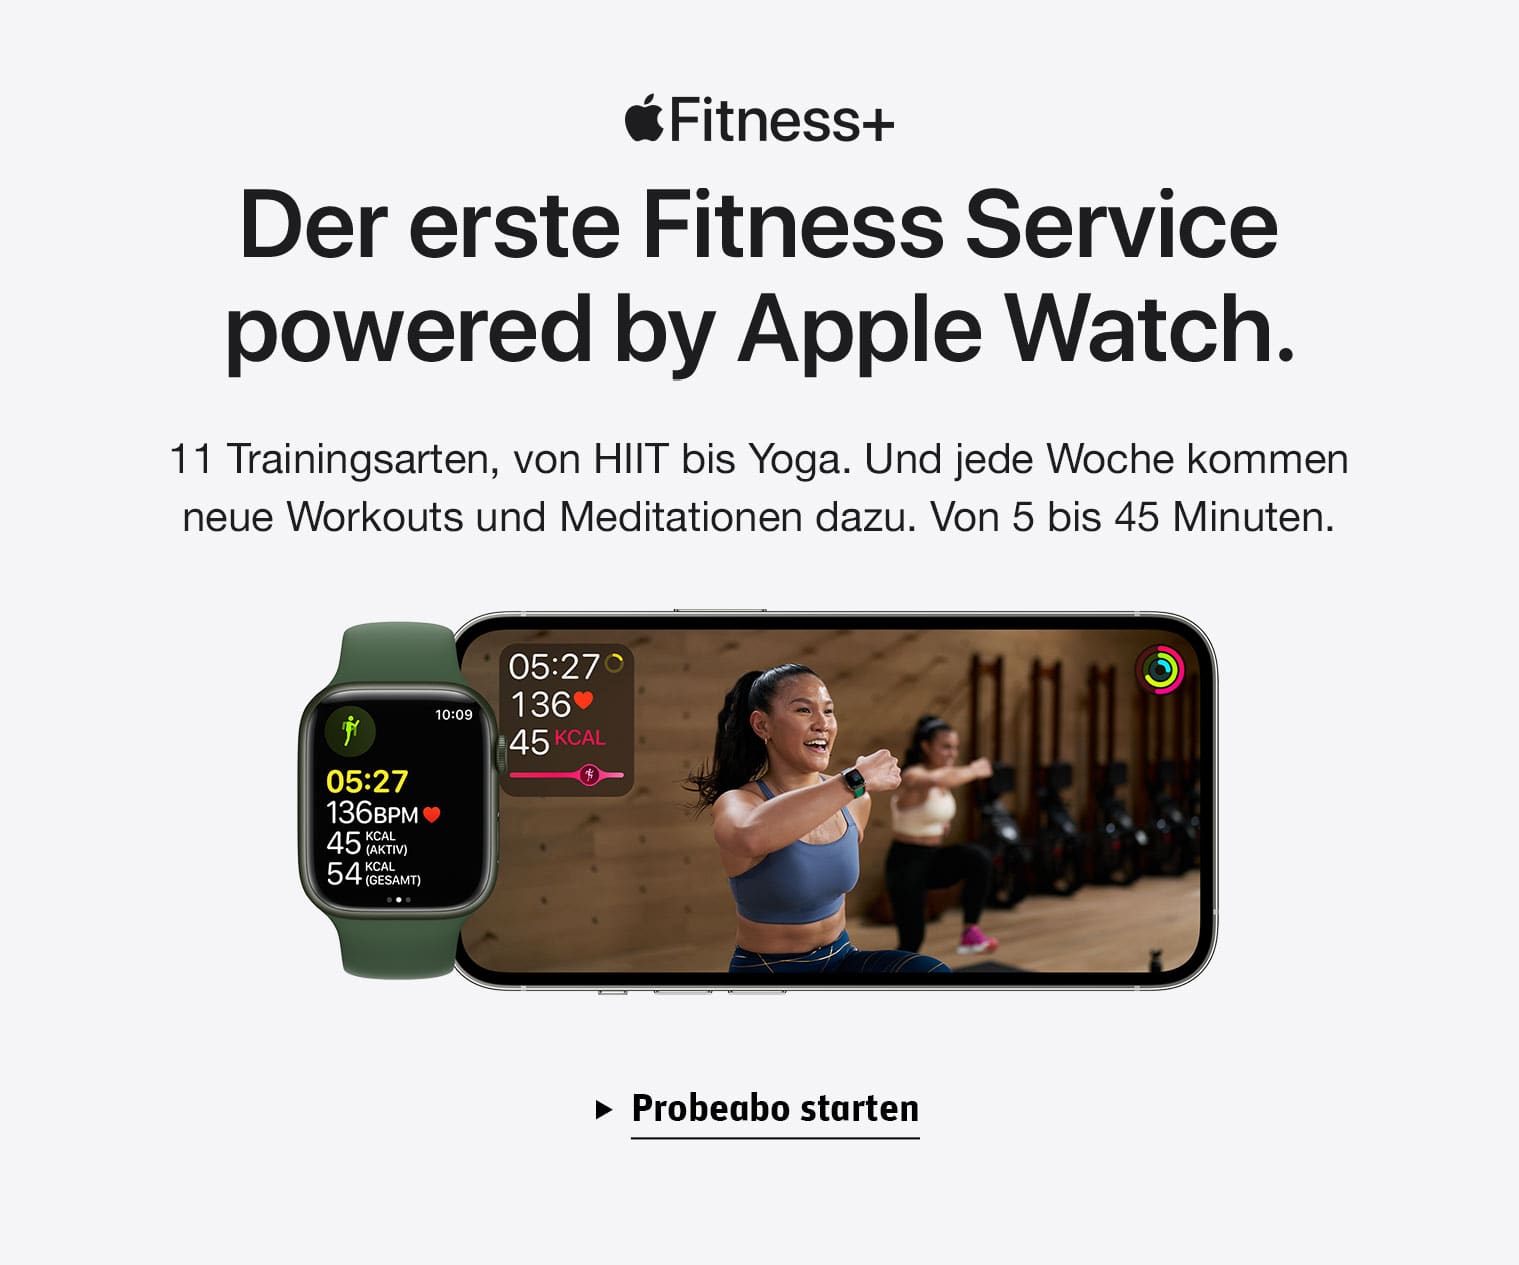 Der erste Fitness Service powerd by Apple Watch.